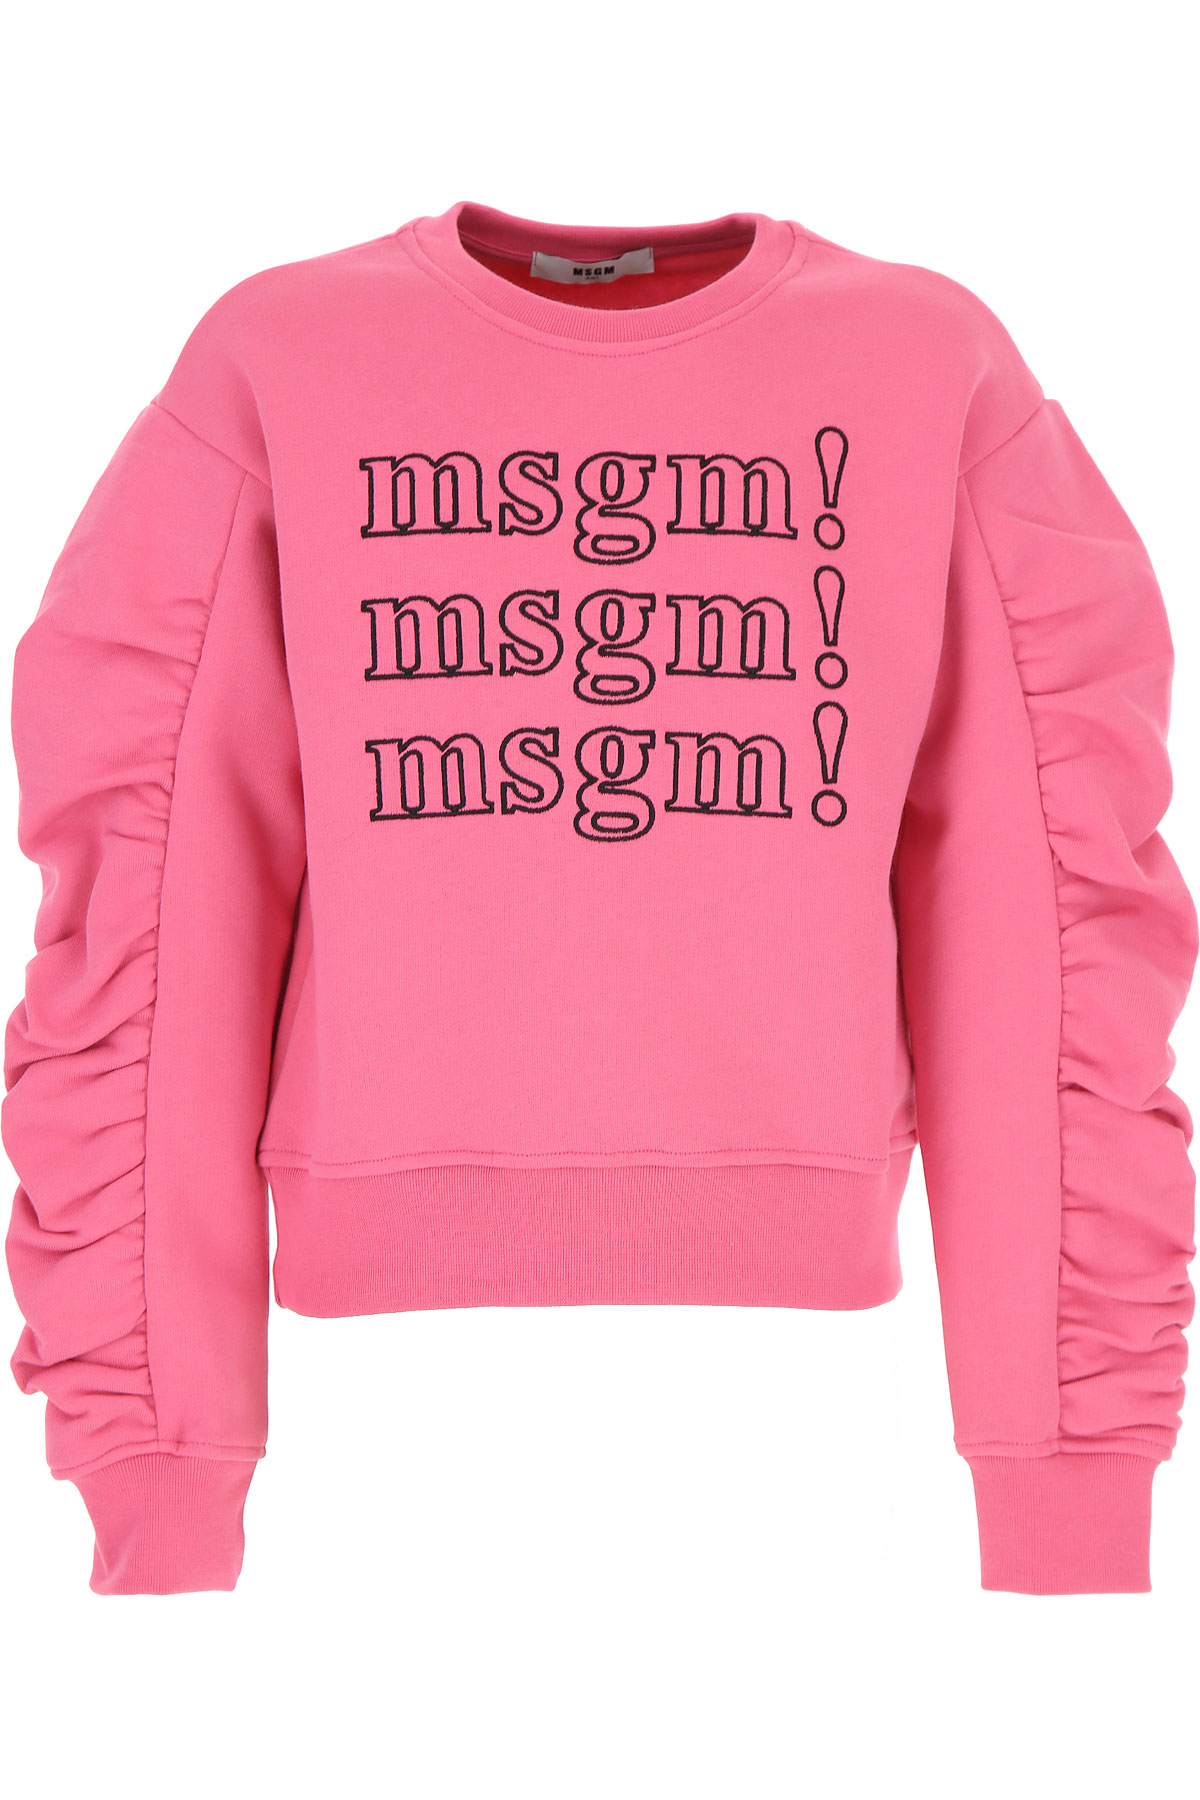 MSGM Kinder Sweatshirt & Kapuzenpullover für Mädchen Günstig im Sale, Seifenblasen Pink, Baumwolle, 2017, 12Y 14Y 8Y